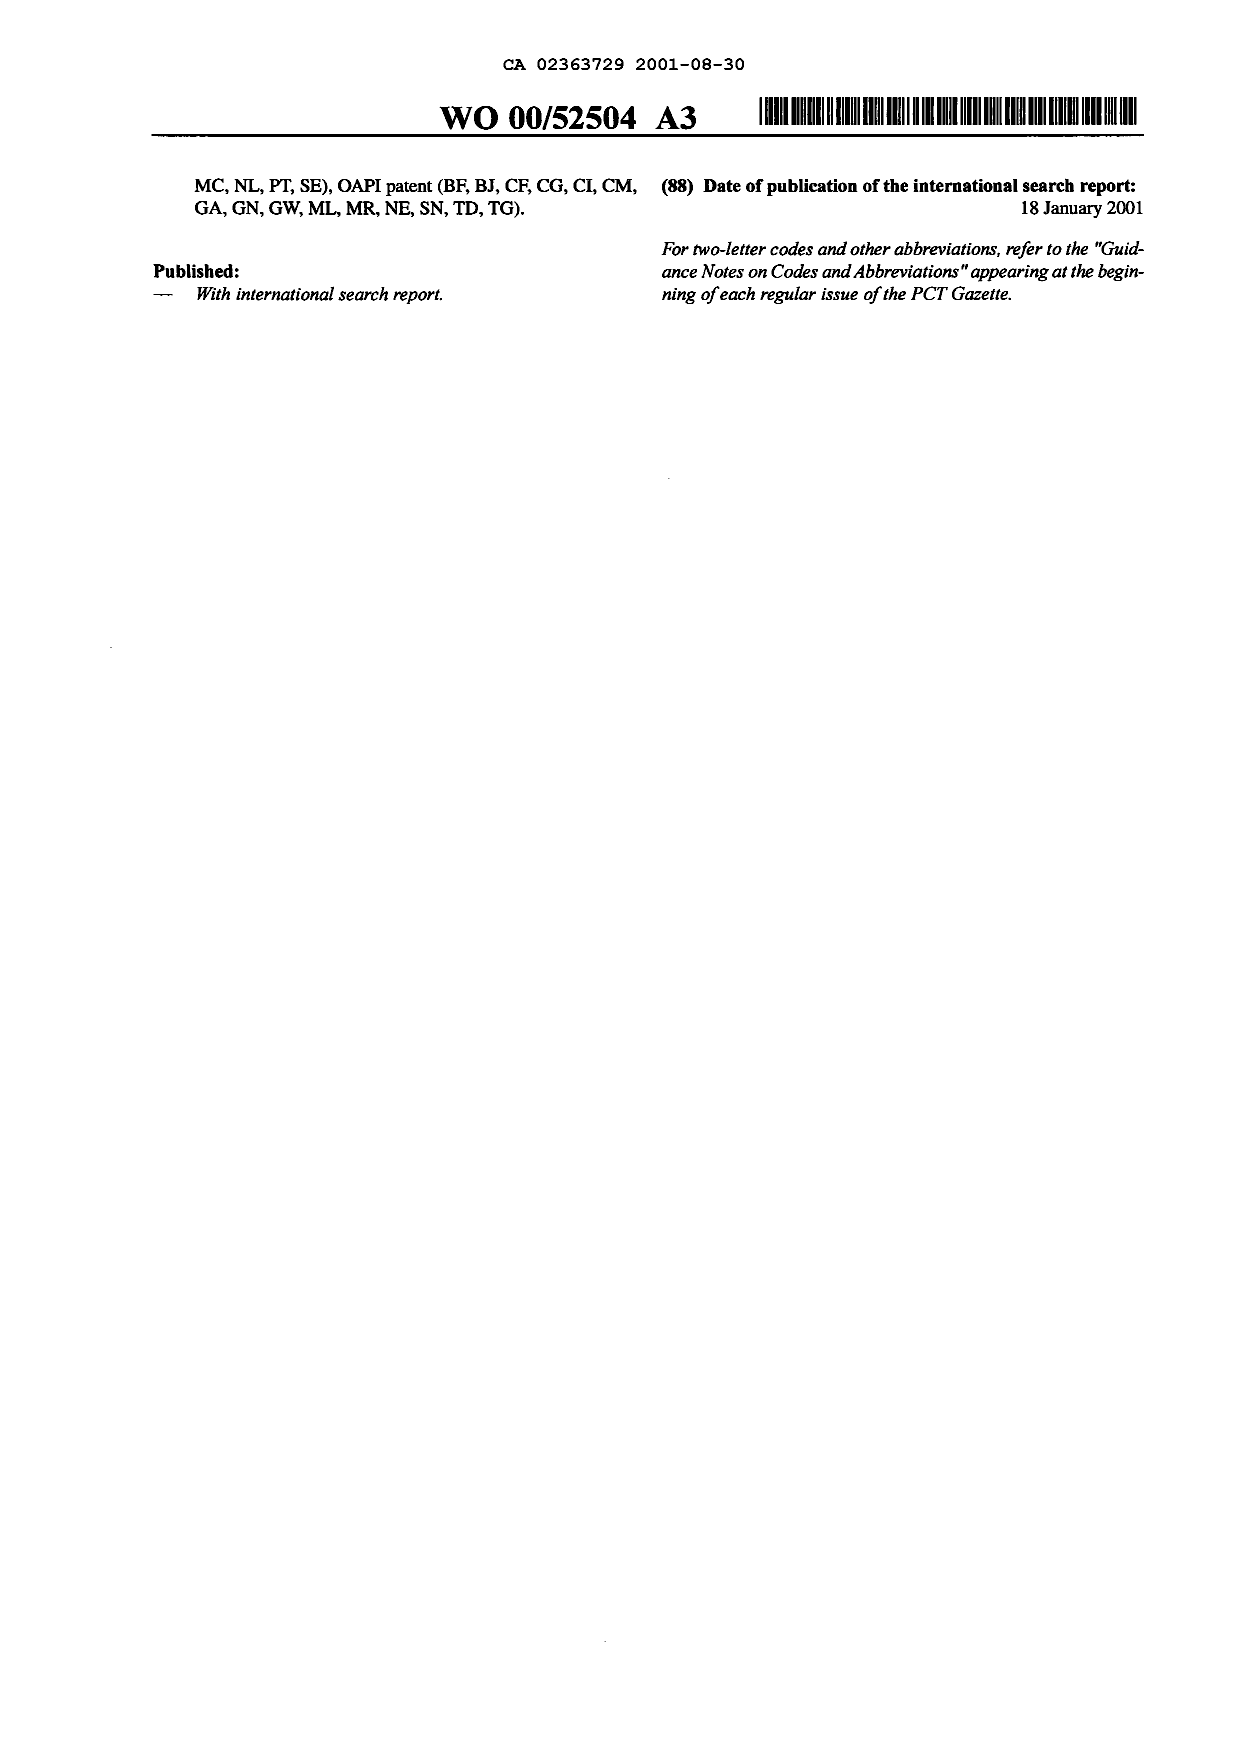 Document de brevet canadien 2363729. Abrégé 20010830. Image 2 de 2